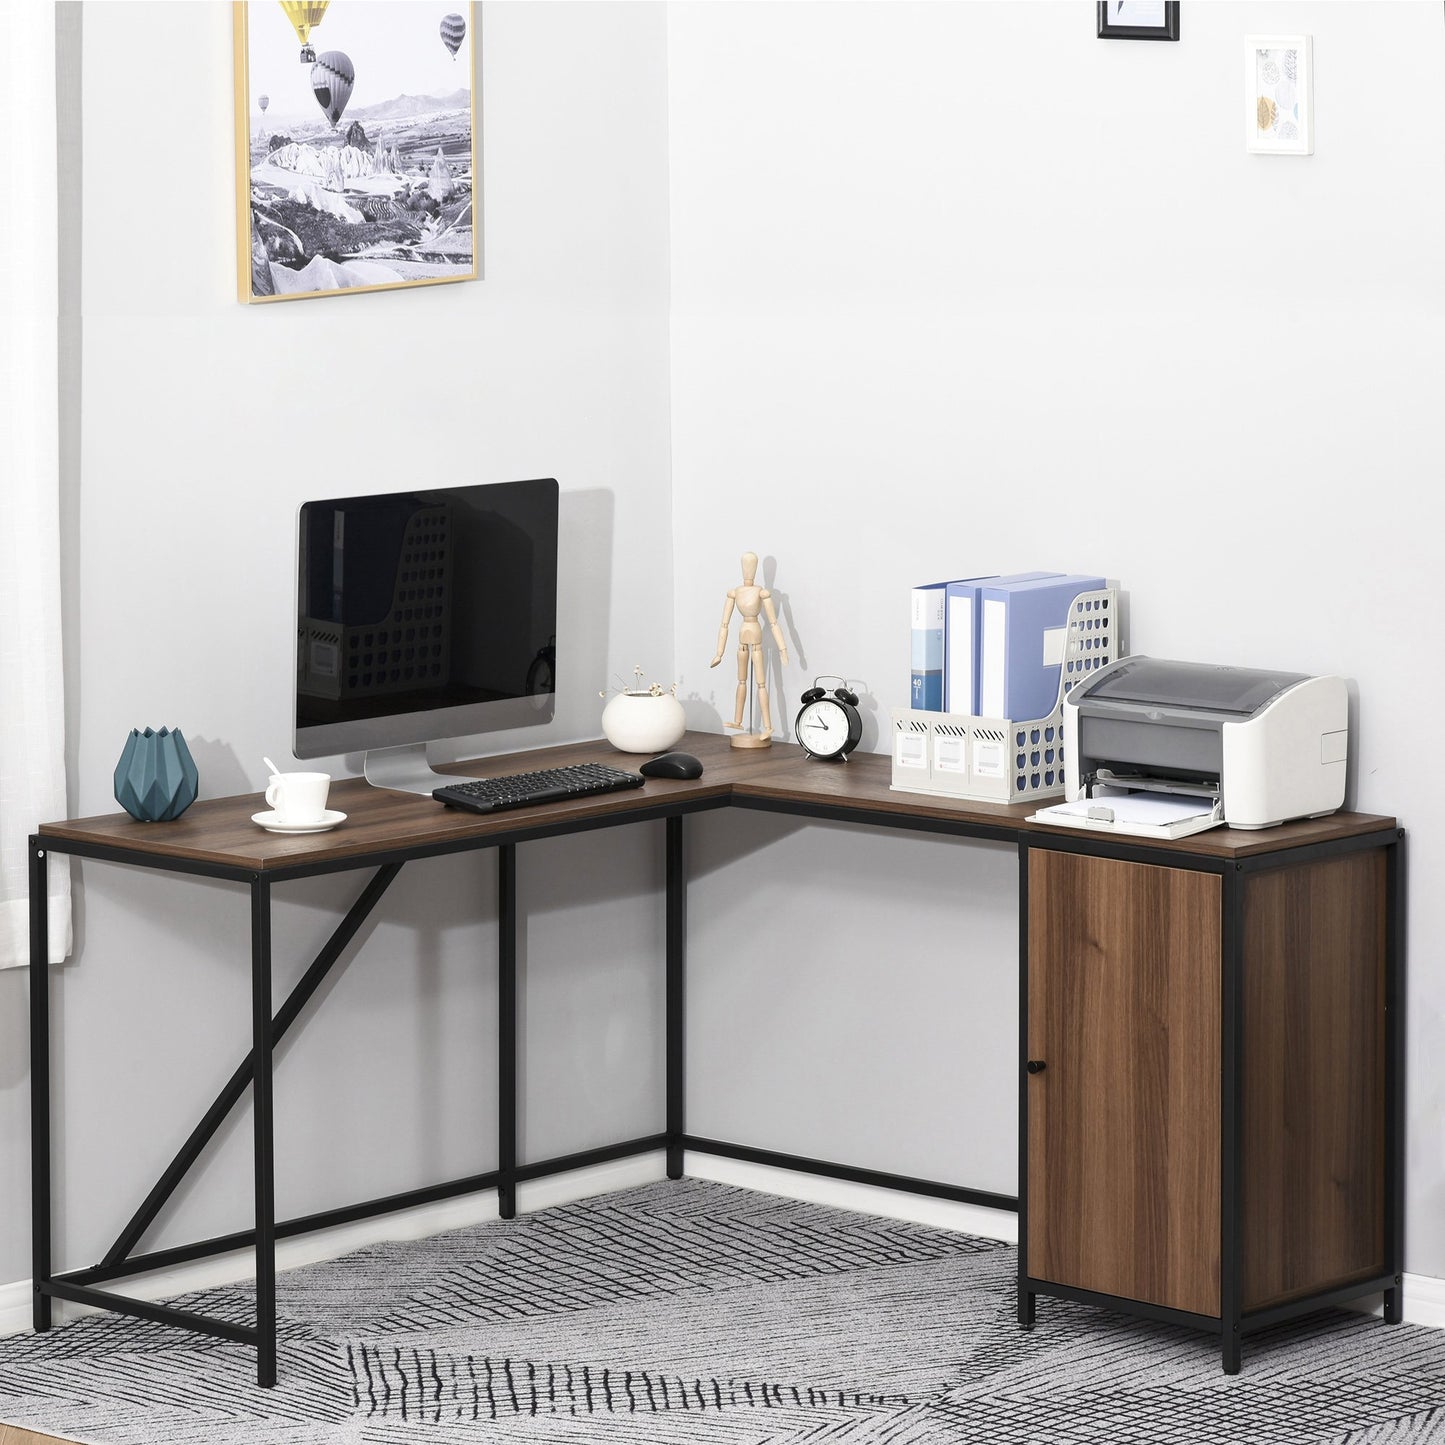 HOMCOM L-Shape Computer Corner Desk PC Table Workstation w/ Cabinet for Home Office